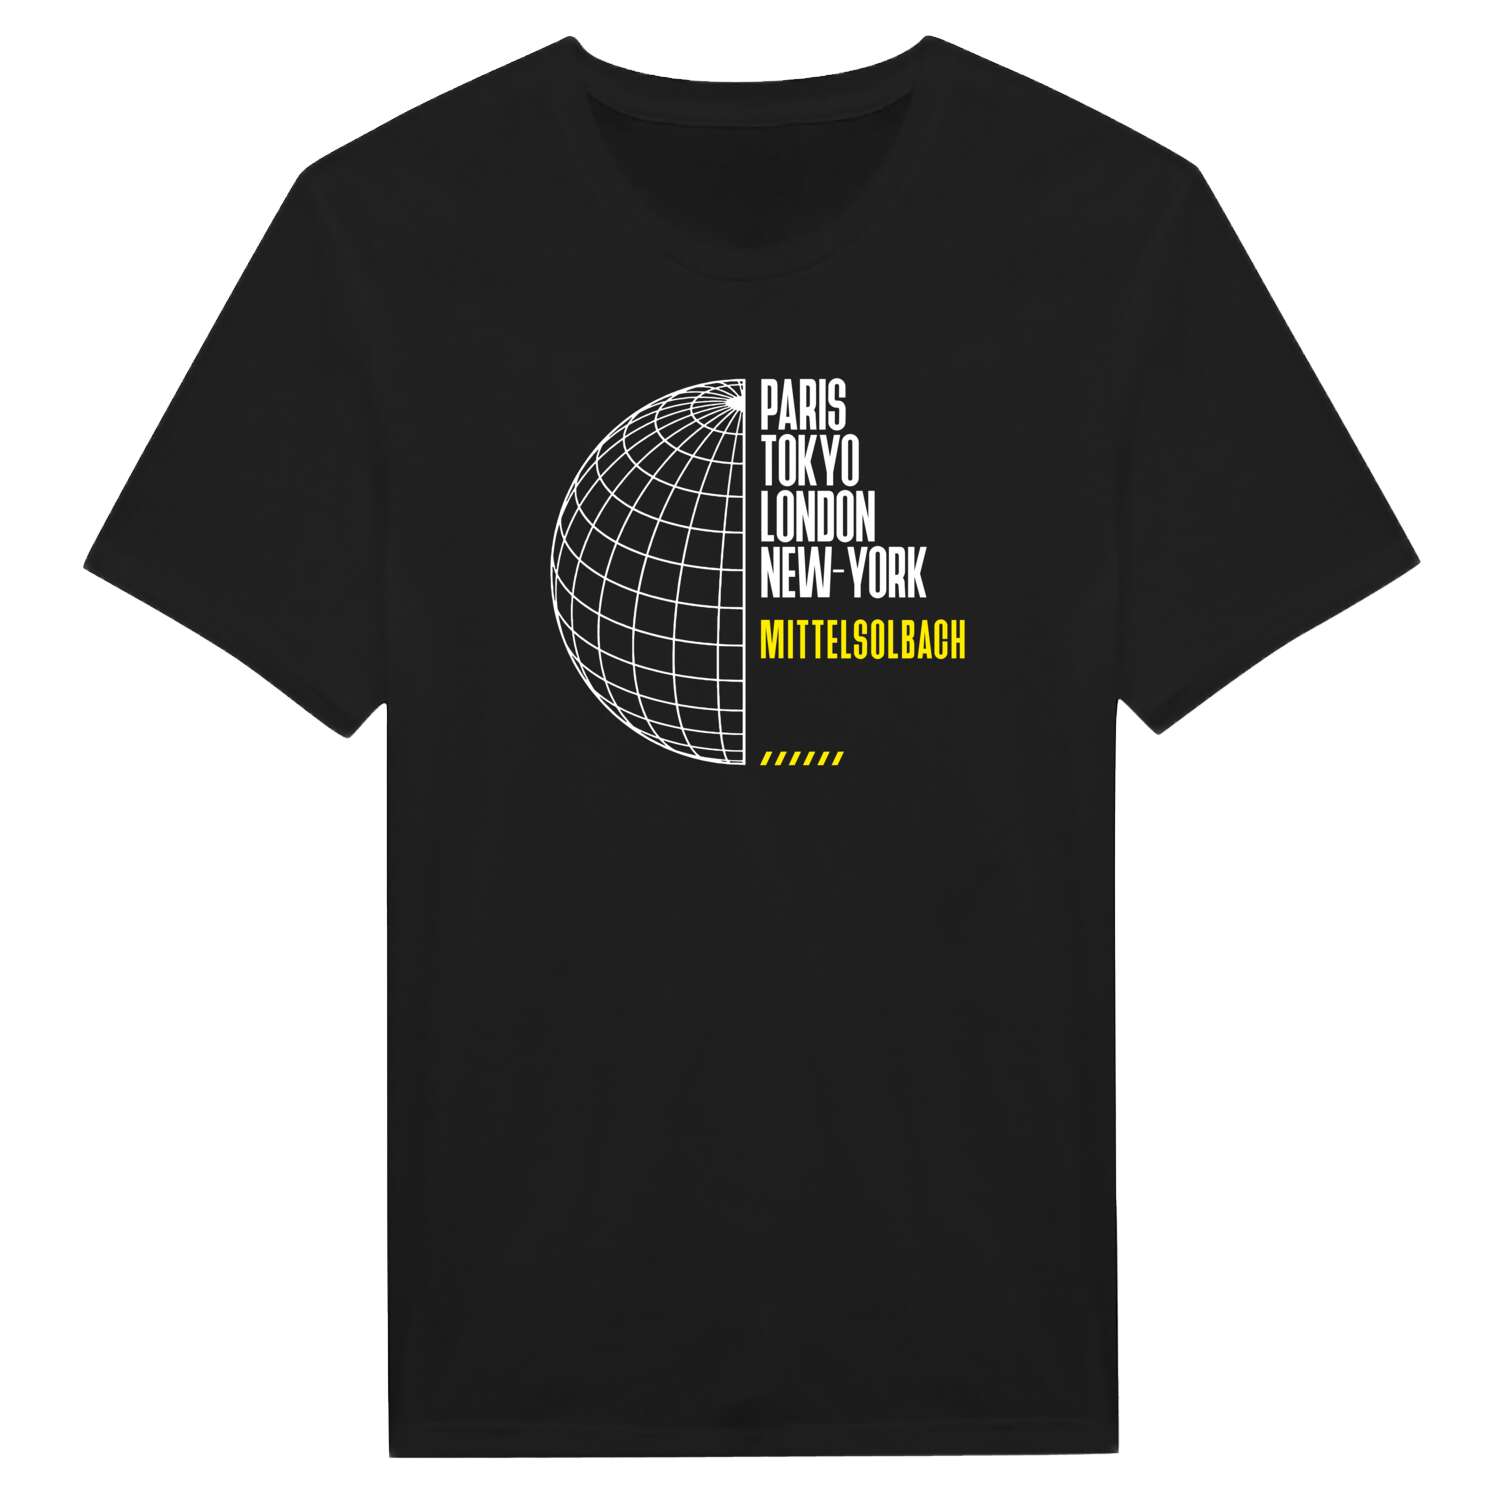 Mittelsolbach T-Shirt »Paris Tokyo London«